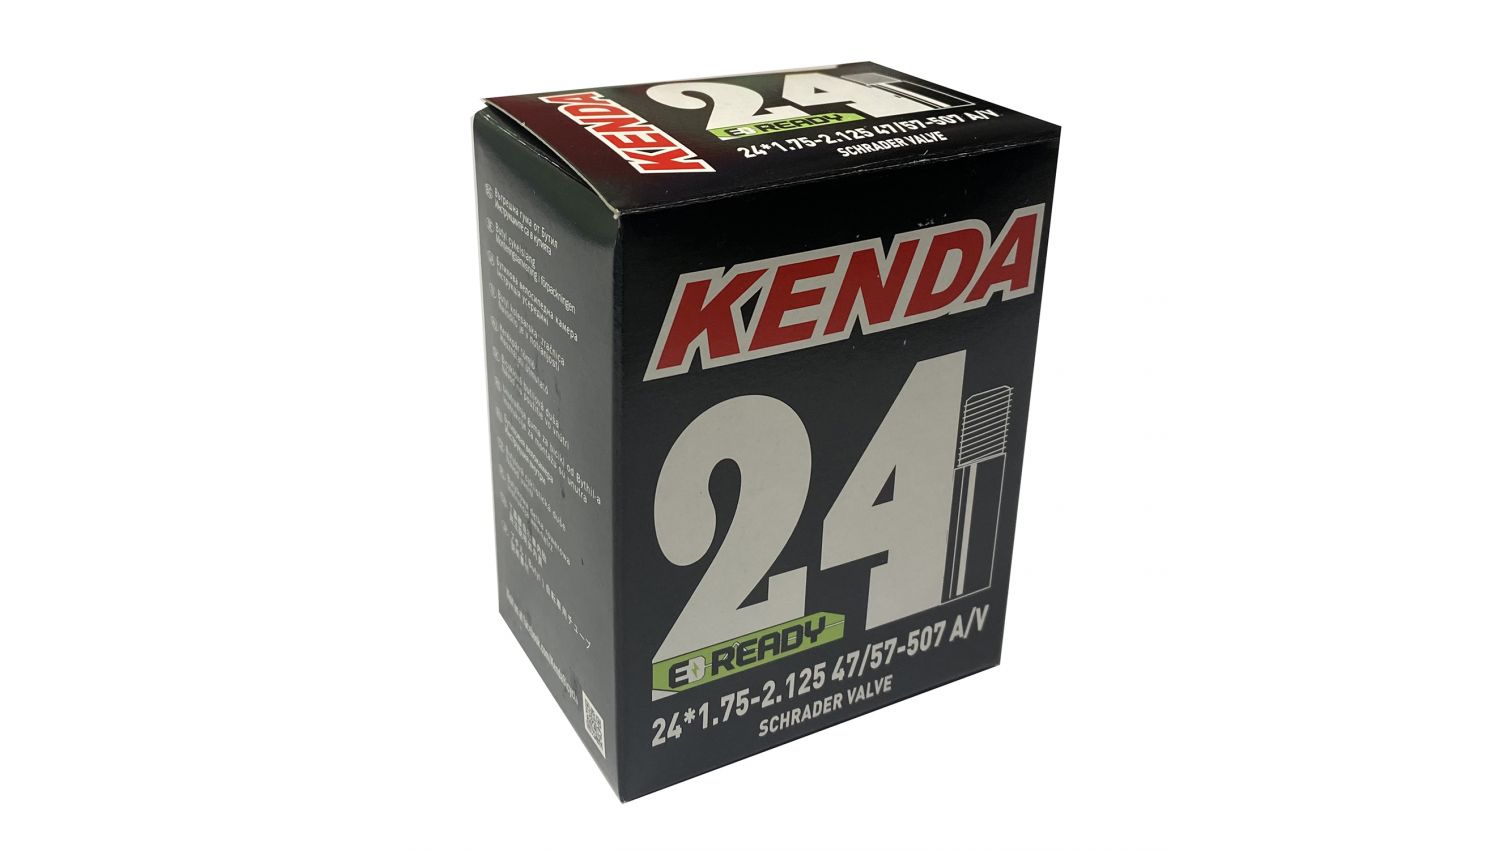 Камера KENDA 24х1.75-2.125, A/V, 47/57-507, в коробке